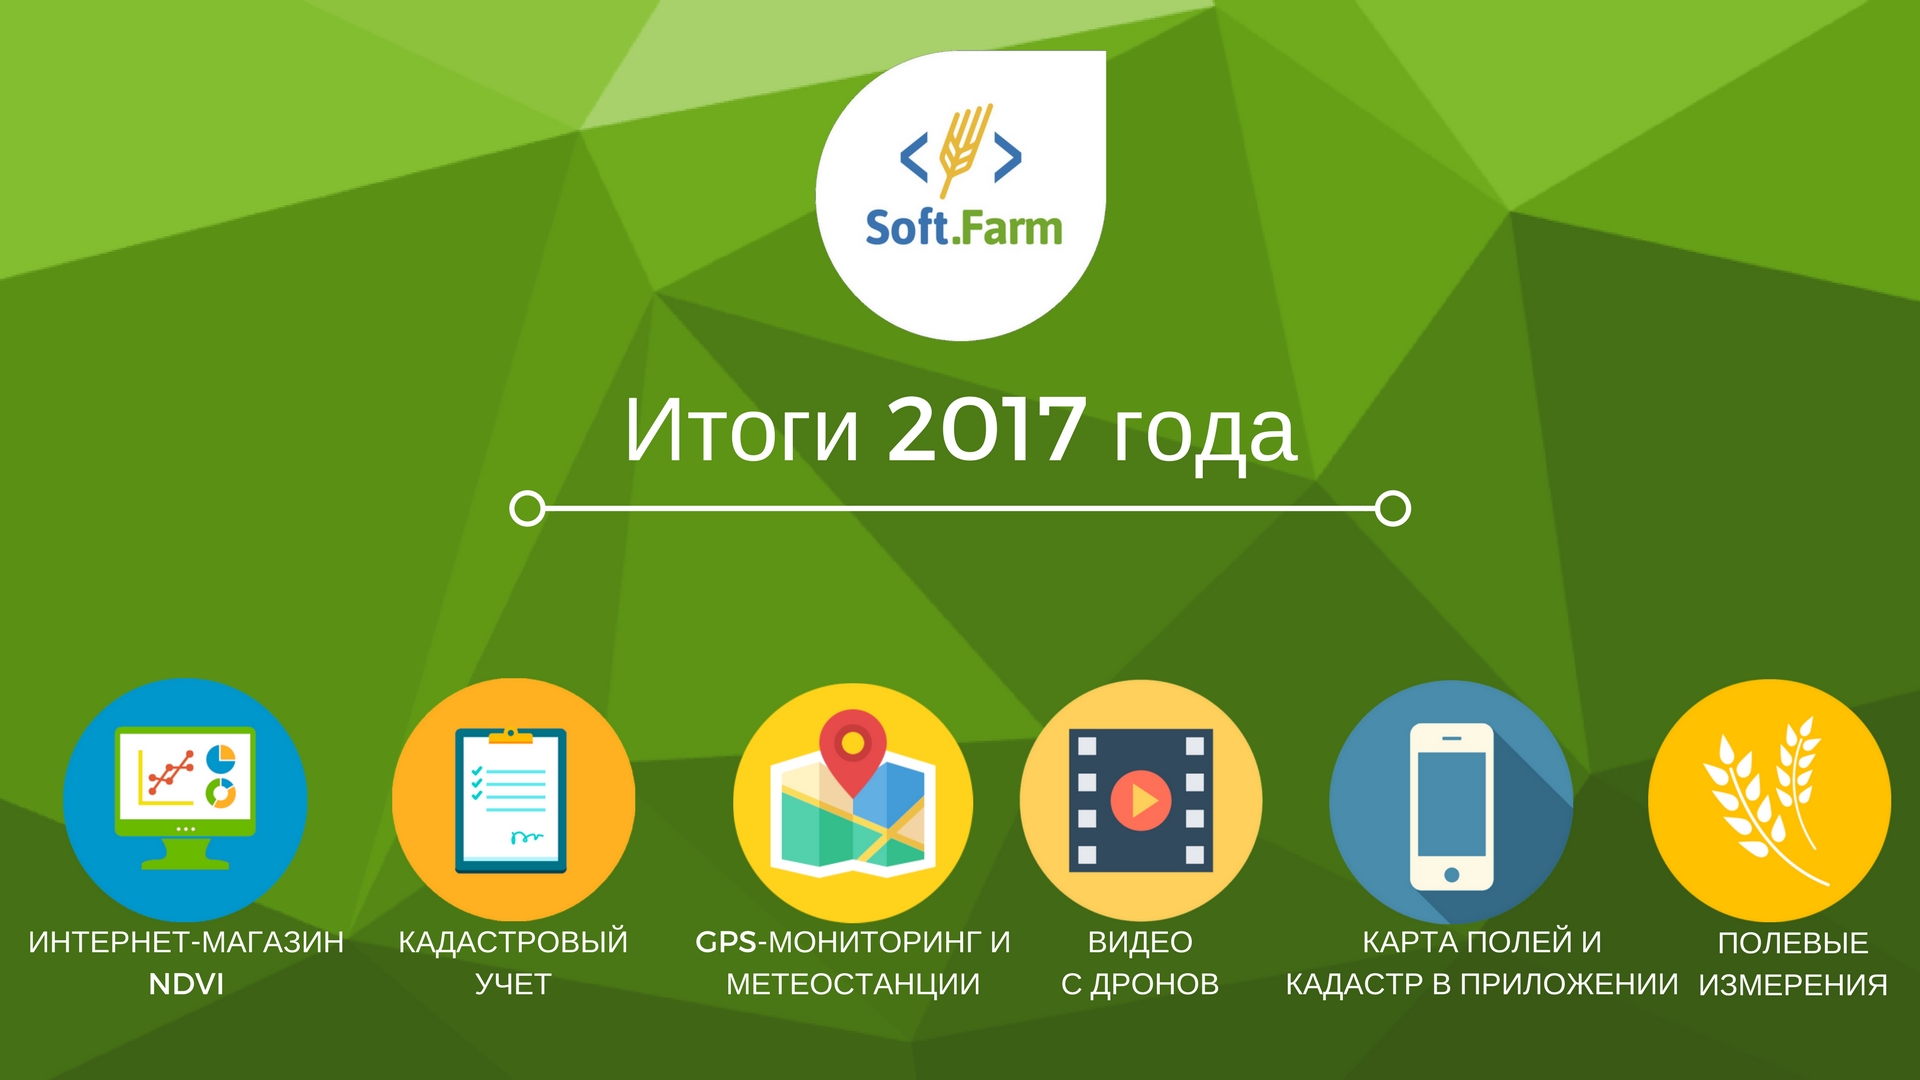 Какие функции для растениеводства и точного земледелия добавились в систему Soft.Farm?